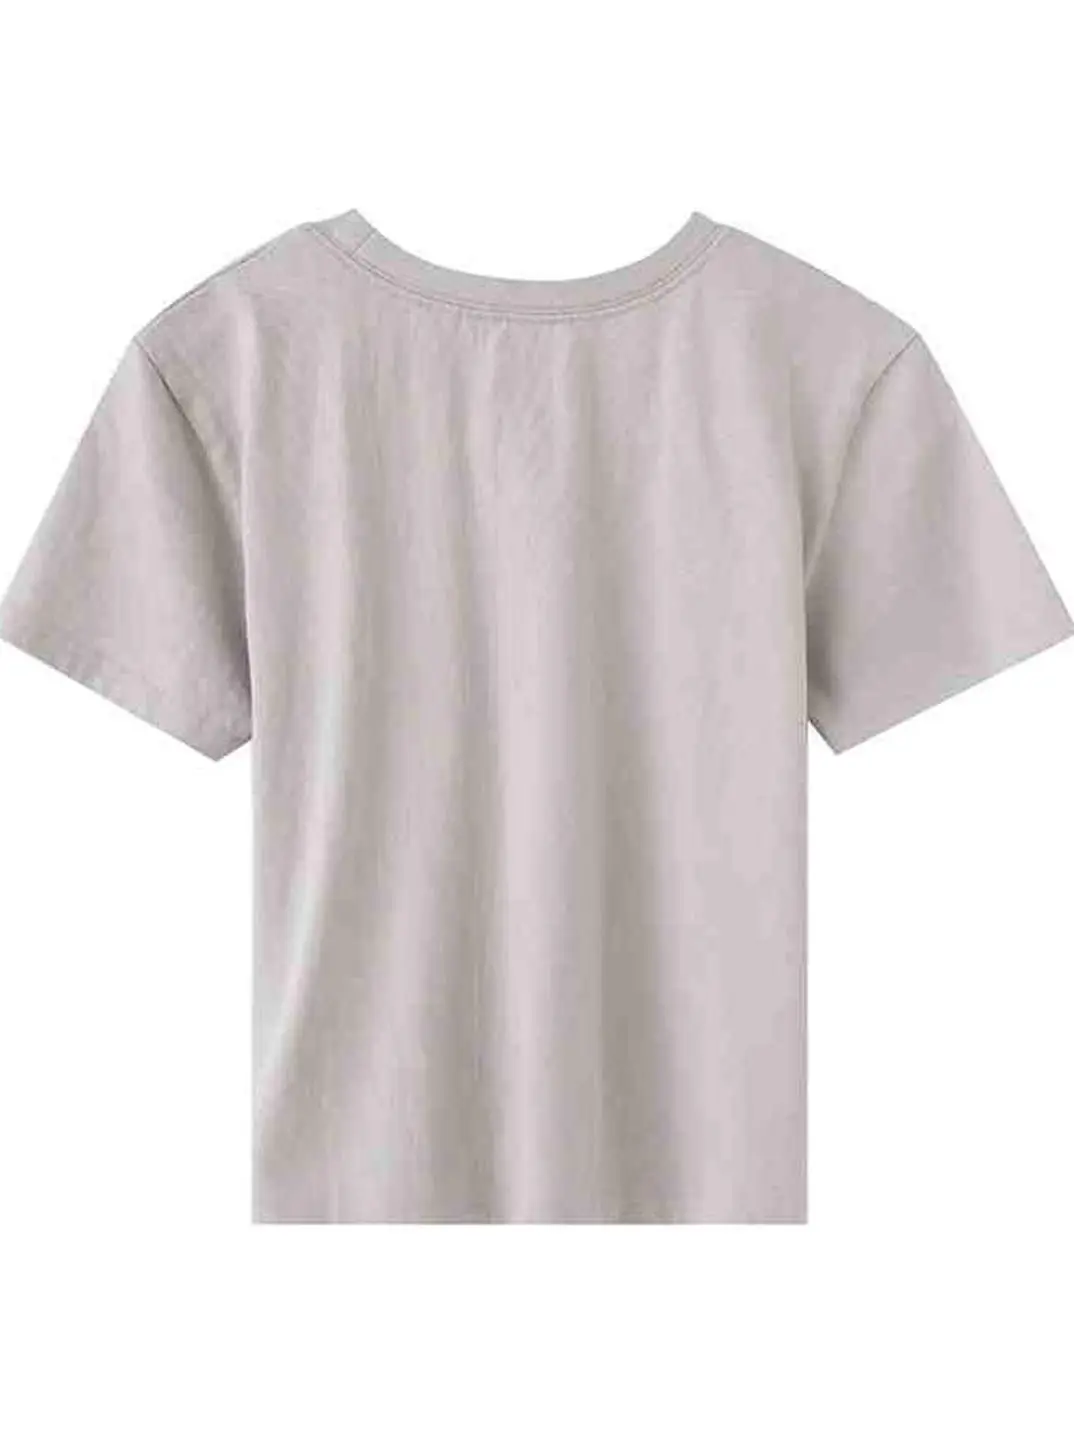 PUWD Повседневные хлопковые футболки-бомба для девочек 2022, Летние модные Женские мягкие Свободные футболки с коротким принтом, Винтажные женские шикарные топы, милые